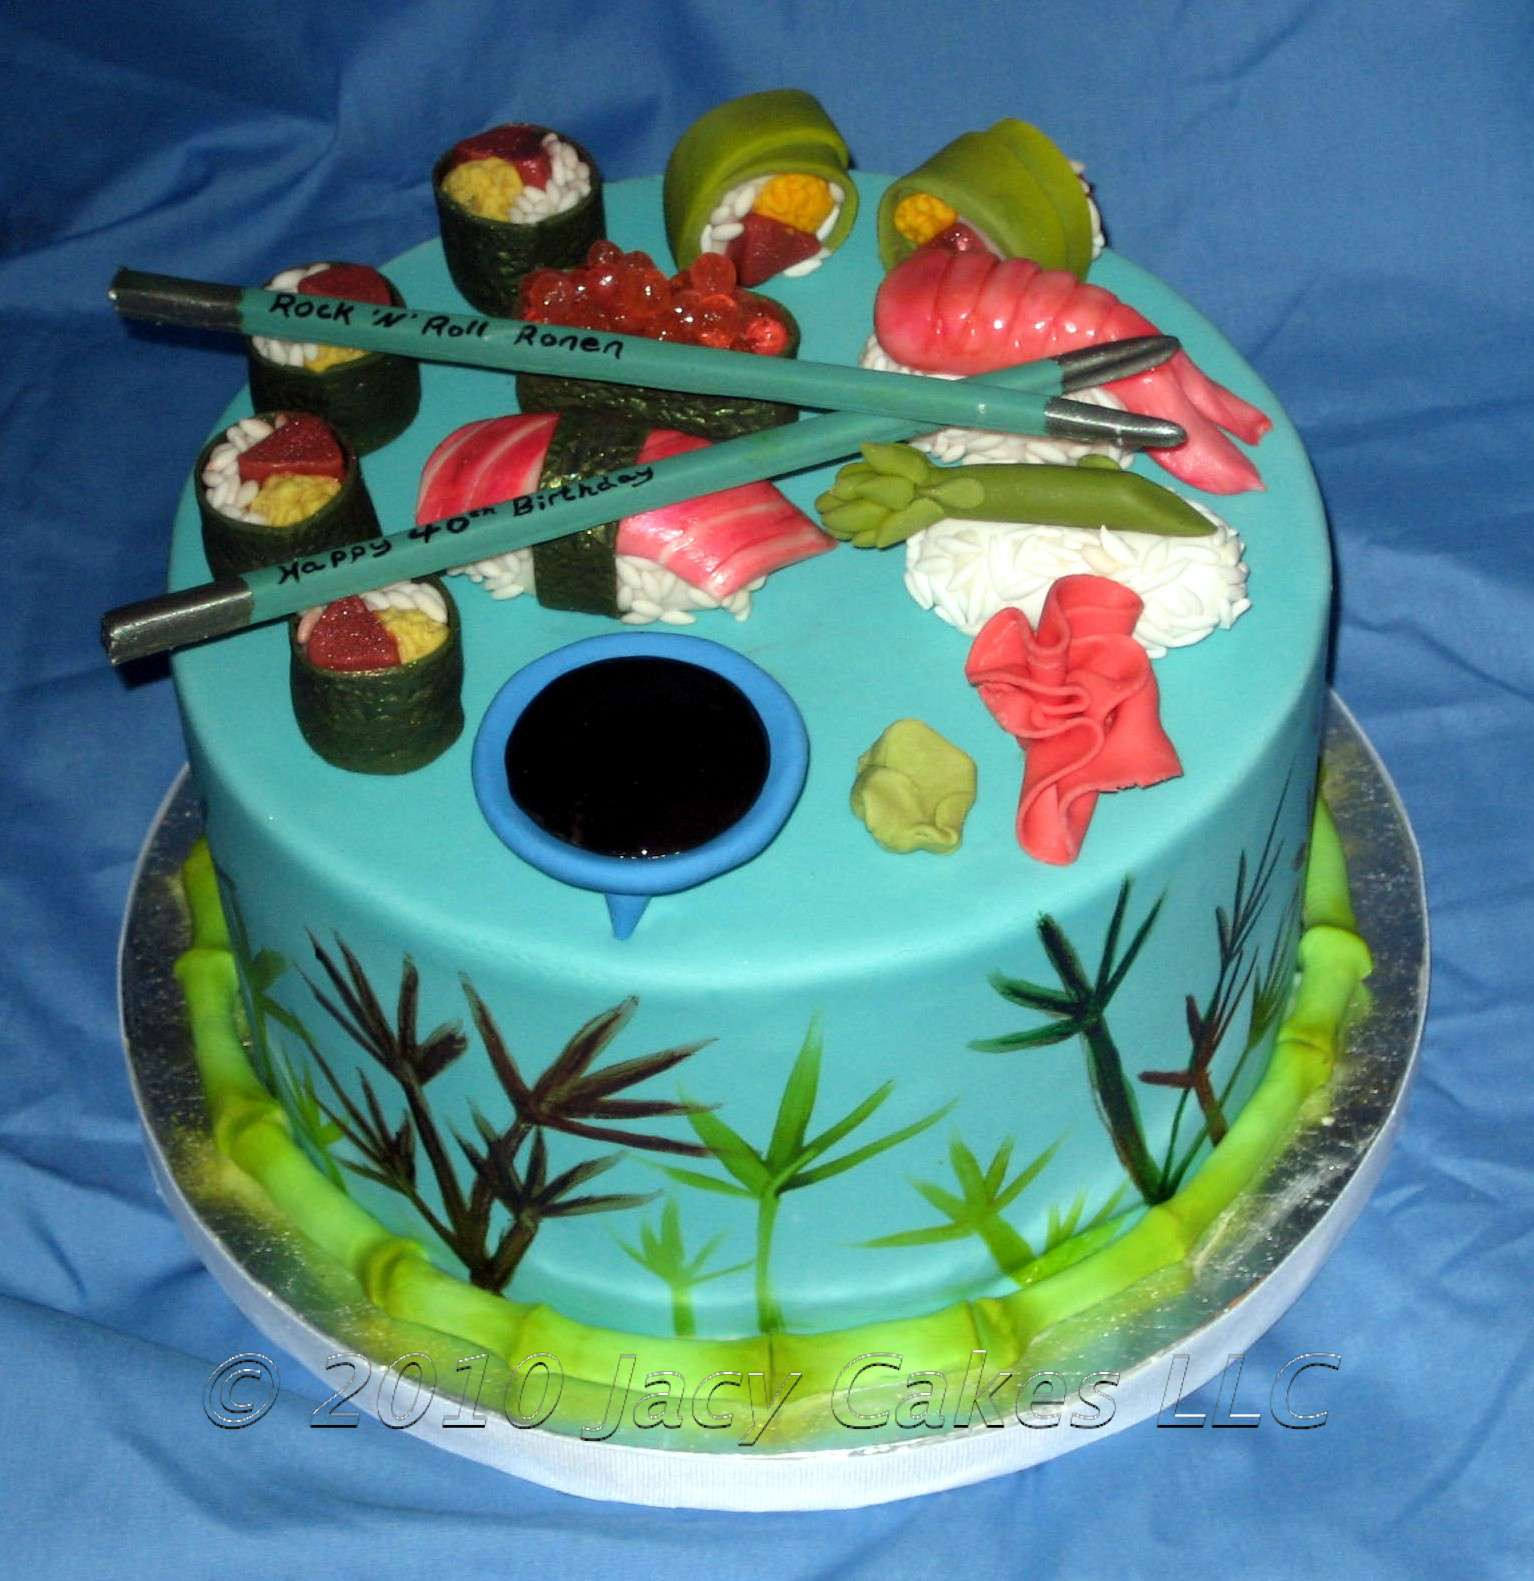 Sushi Birthday Cake
 News from Jacy Cakes Sushi Cake